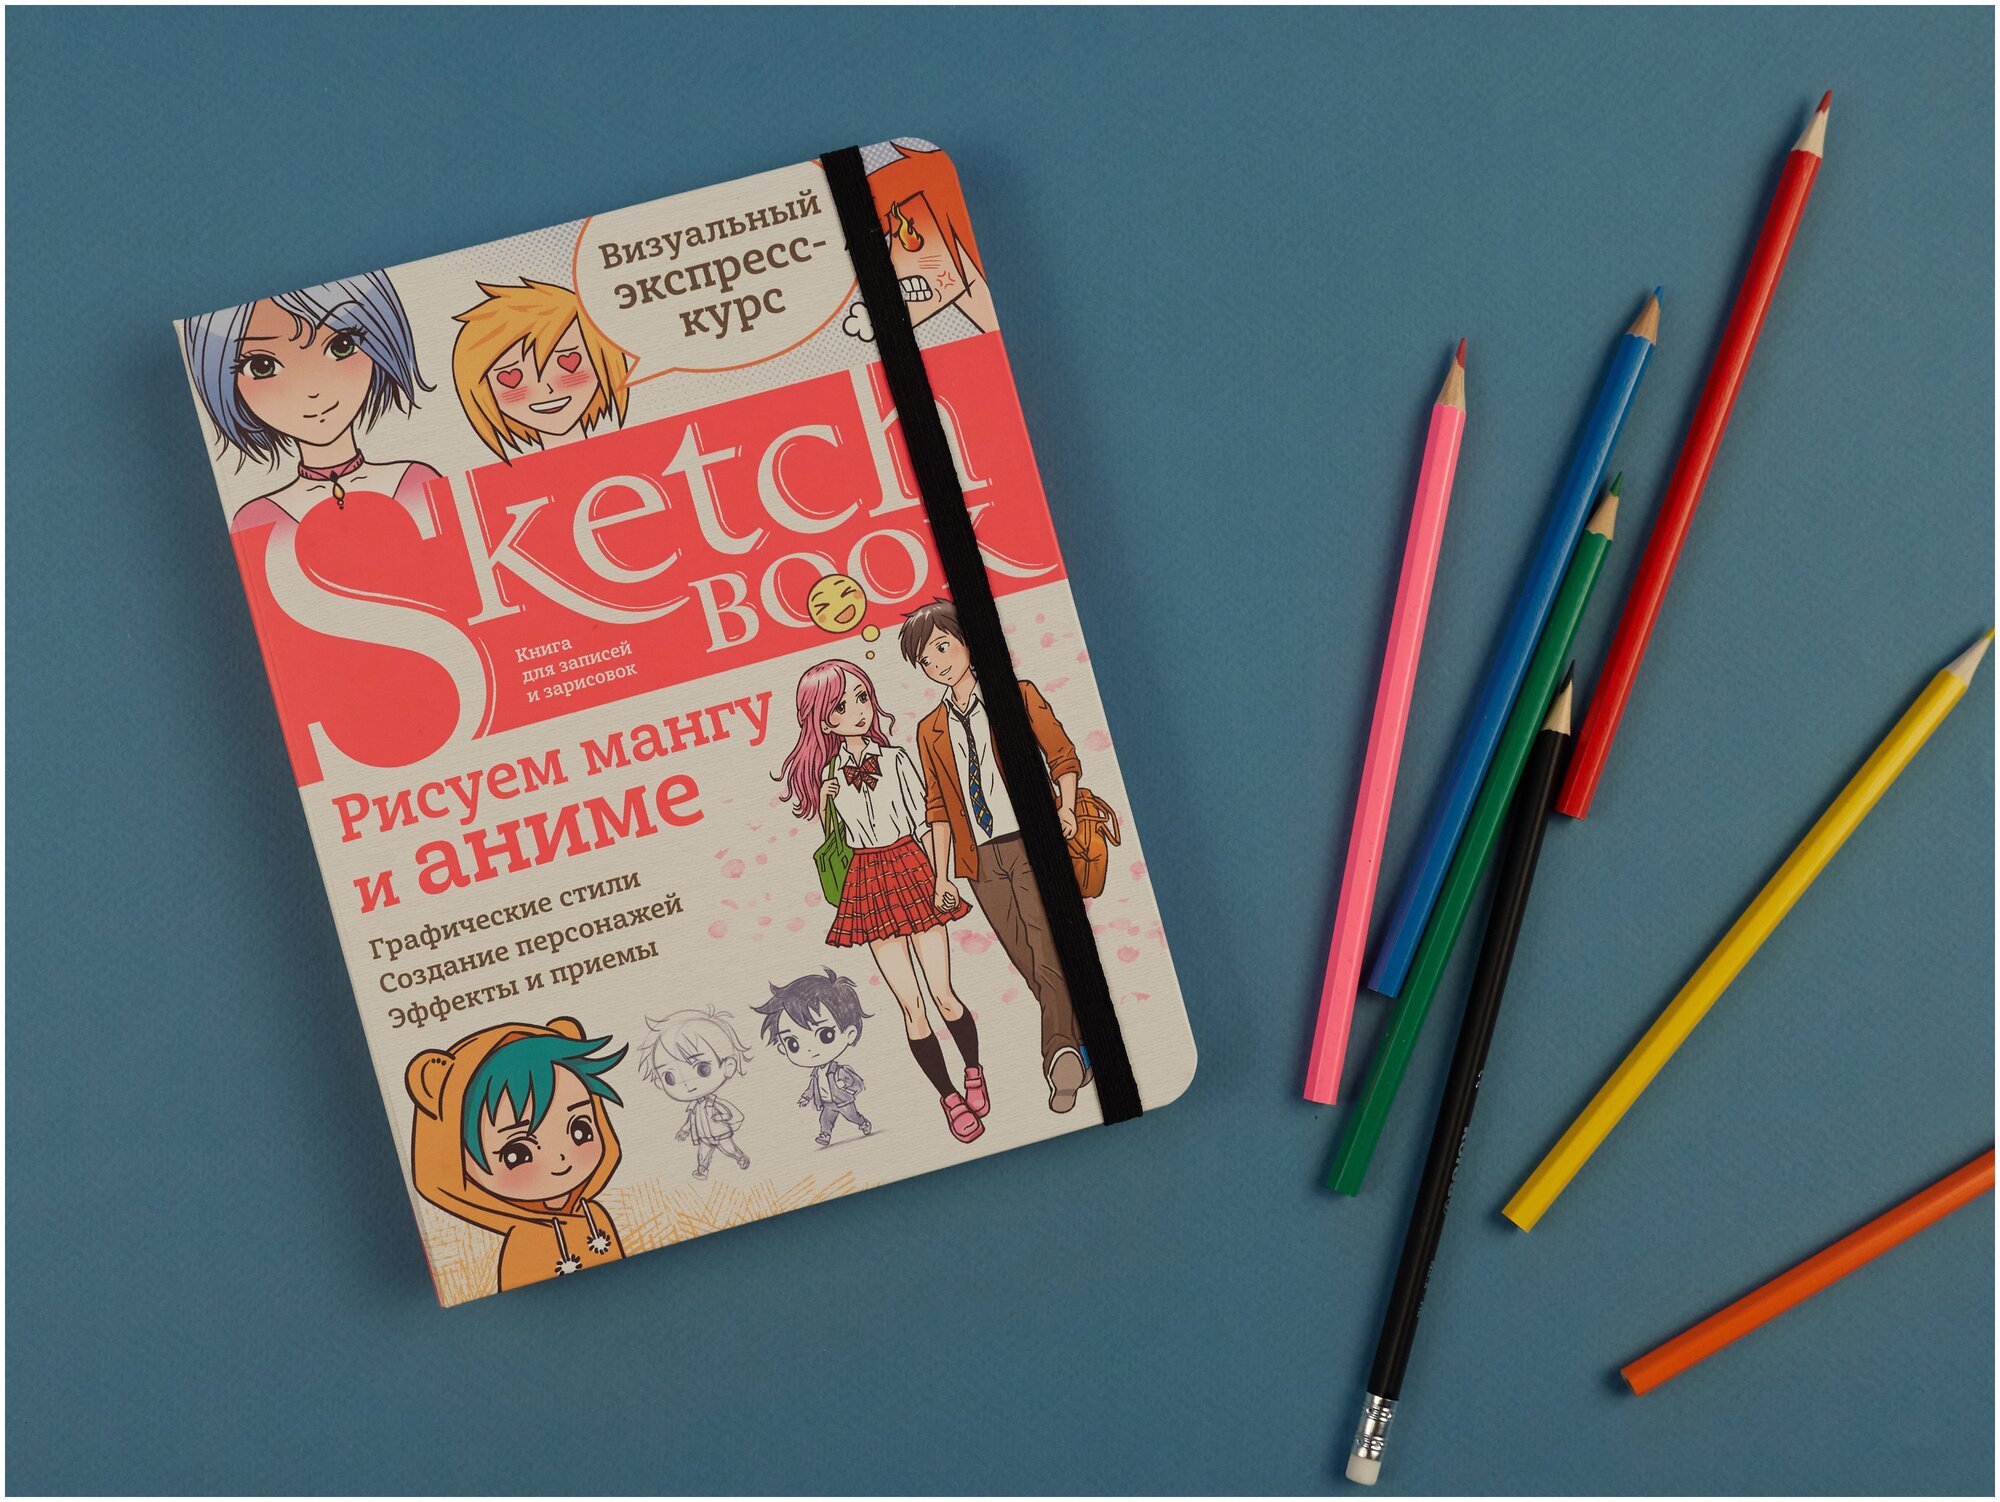 Sketchbook. Рисуем мангу и аниме - фото №1